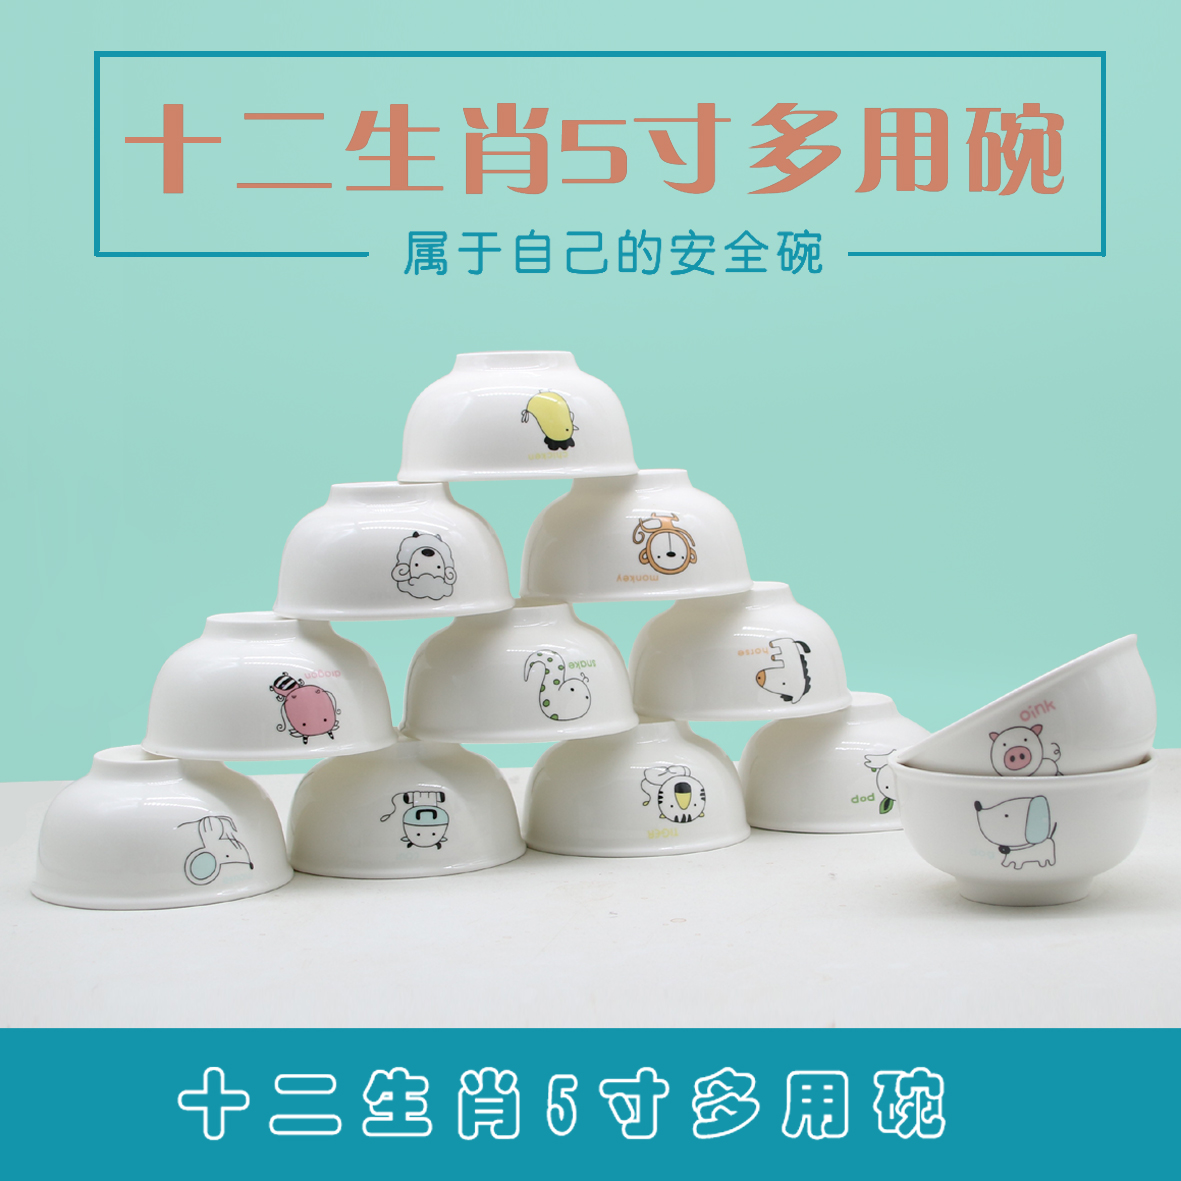 尚邦12生肖陶瓷碗创意个性家用学生卡通单个吃饭碗5英寸定制LOGO